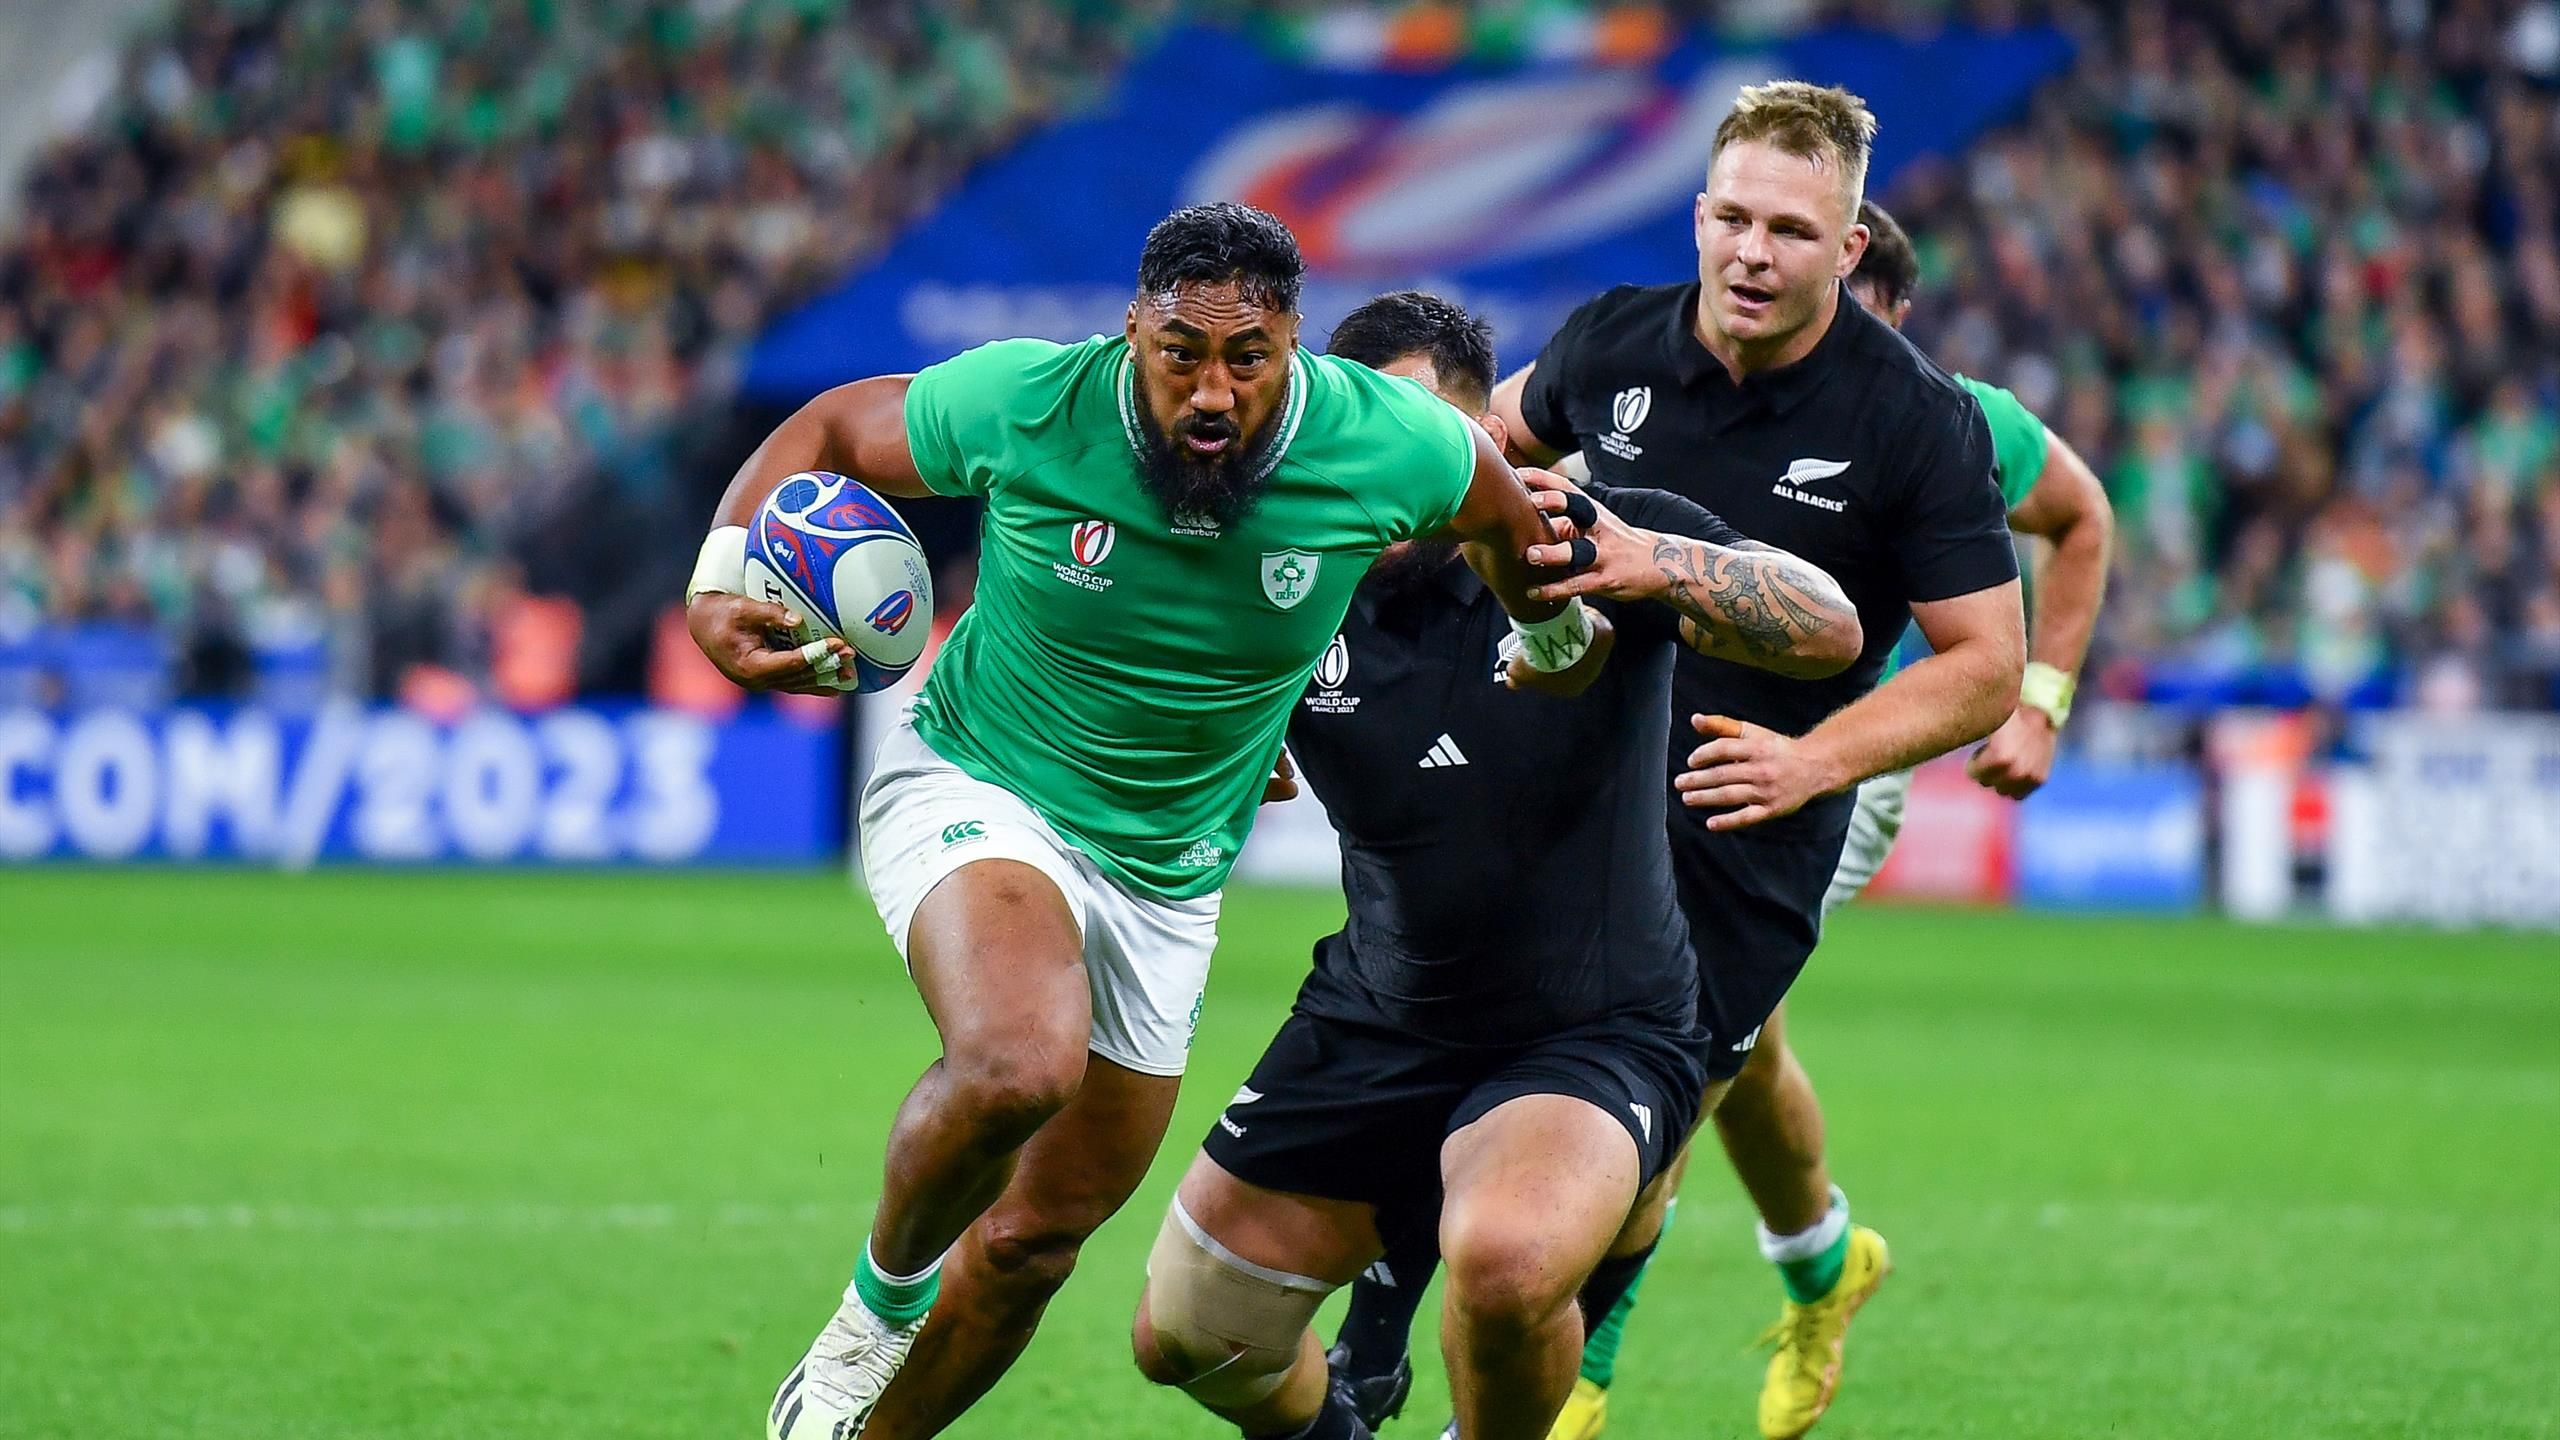 Rugby-WM Neuseeland entzaubert Irland im Viertelfinale - 2824-Sieg im Stade de France - Rugby Video